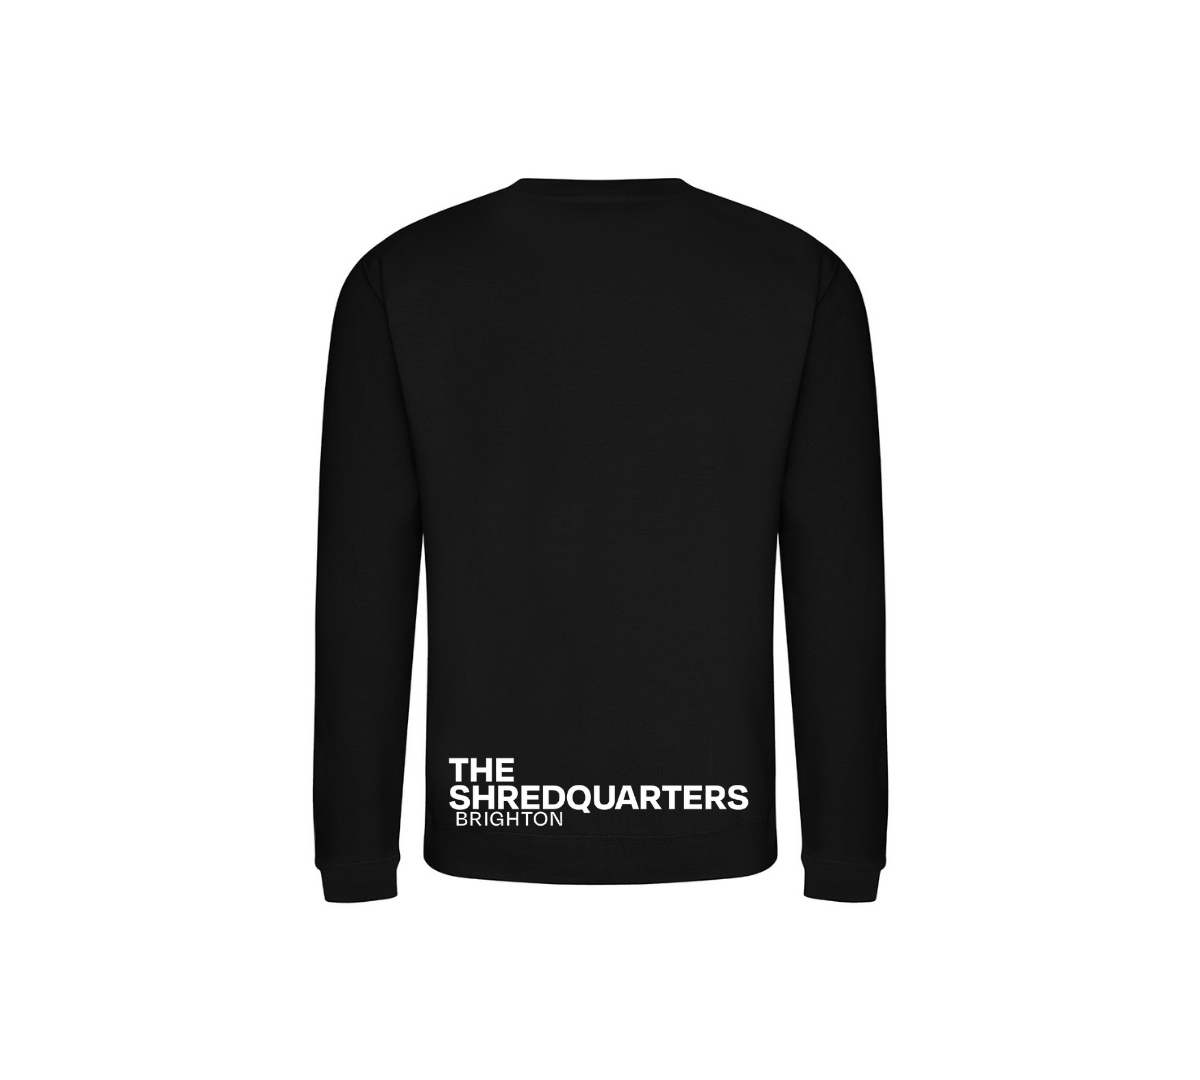 The Shredquarters Brighton Sweater